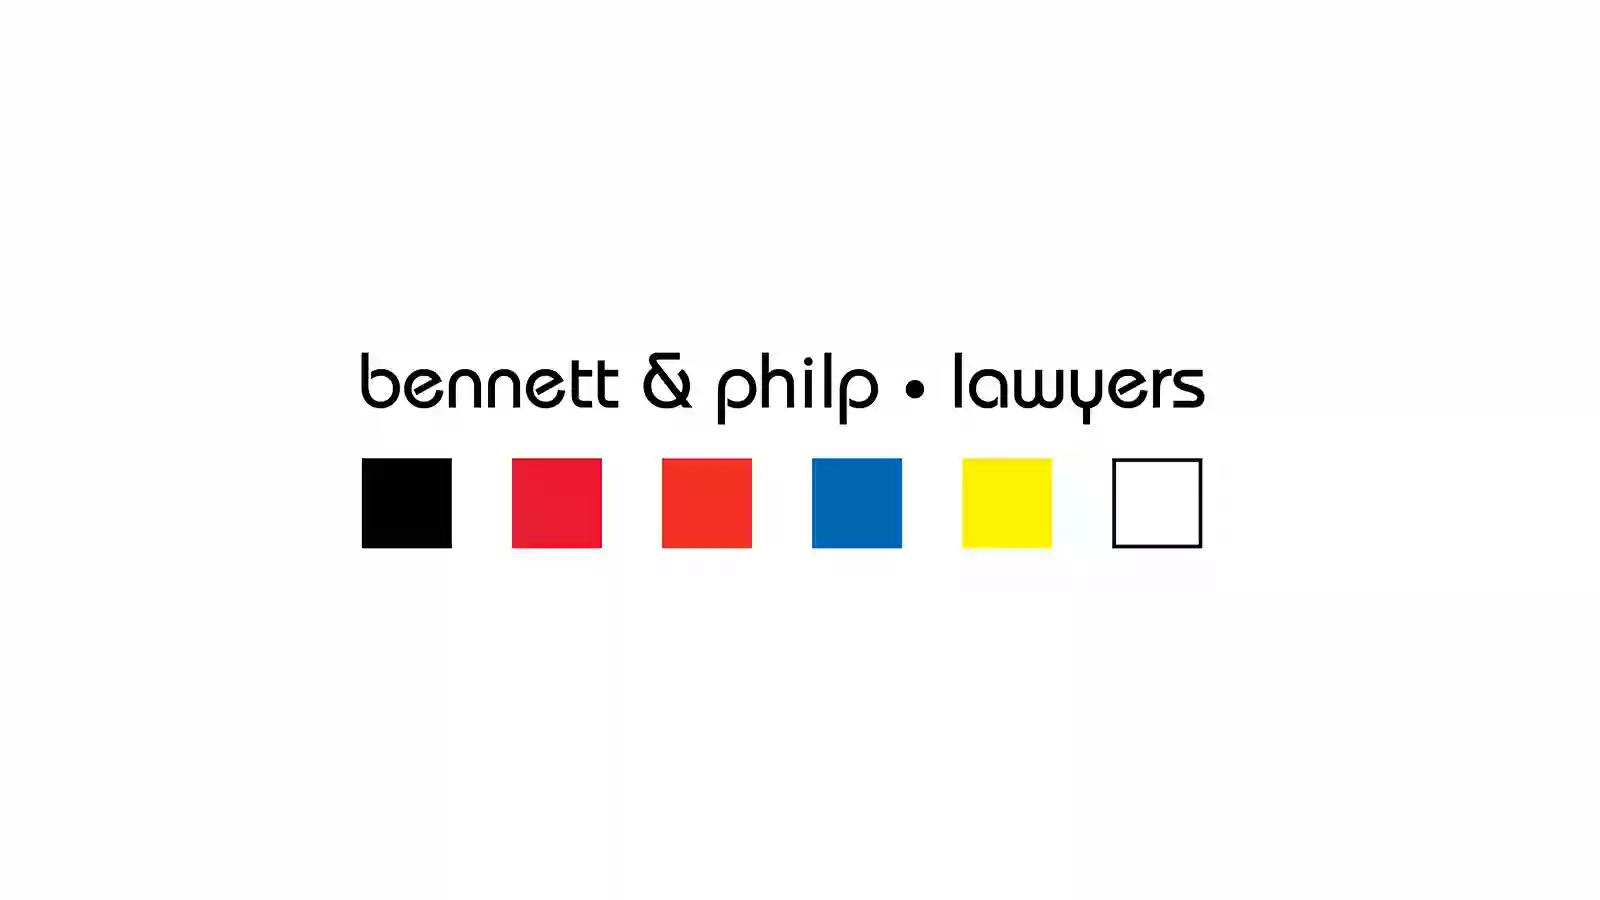 Bennett & Philp Lawyers